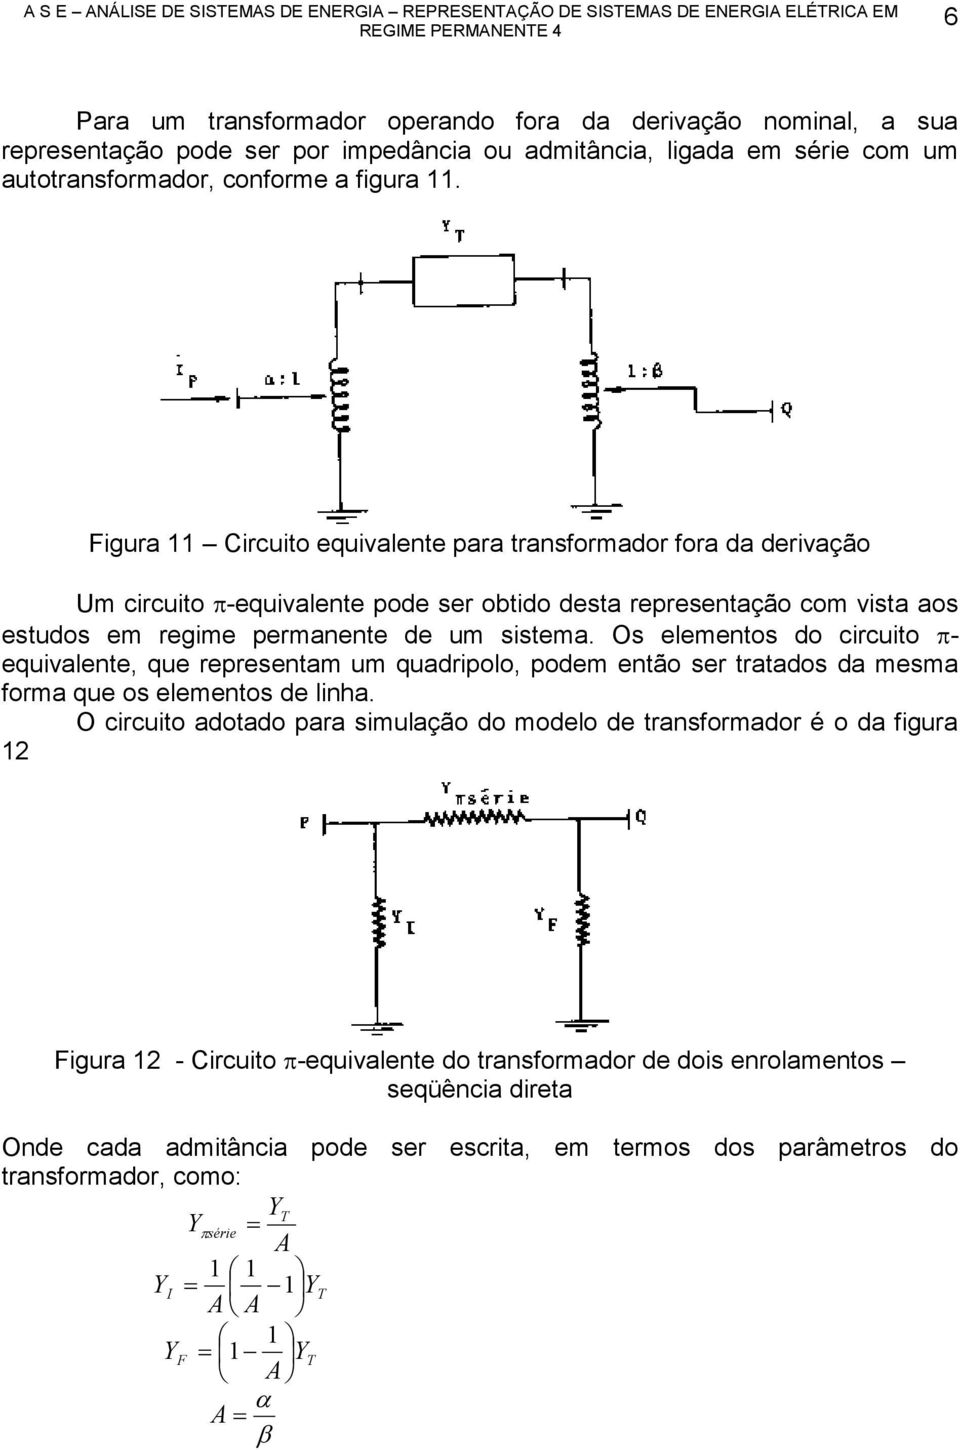 igur Circuito equivlente pr trnsformdor for d derivção Um circuito -equivlente pode ser obtido dest representção com vist os estudos em regime permnente de um sistem.